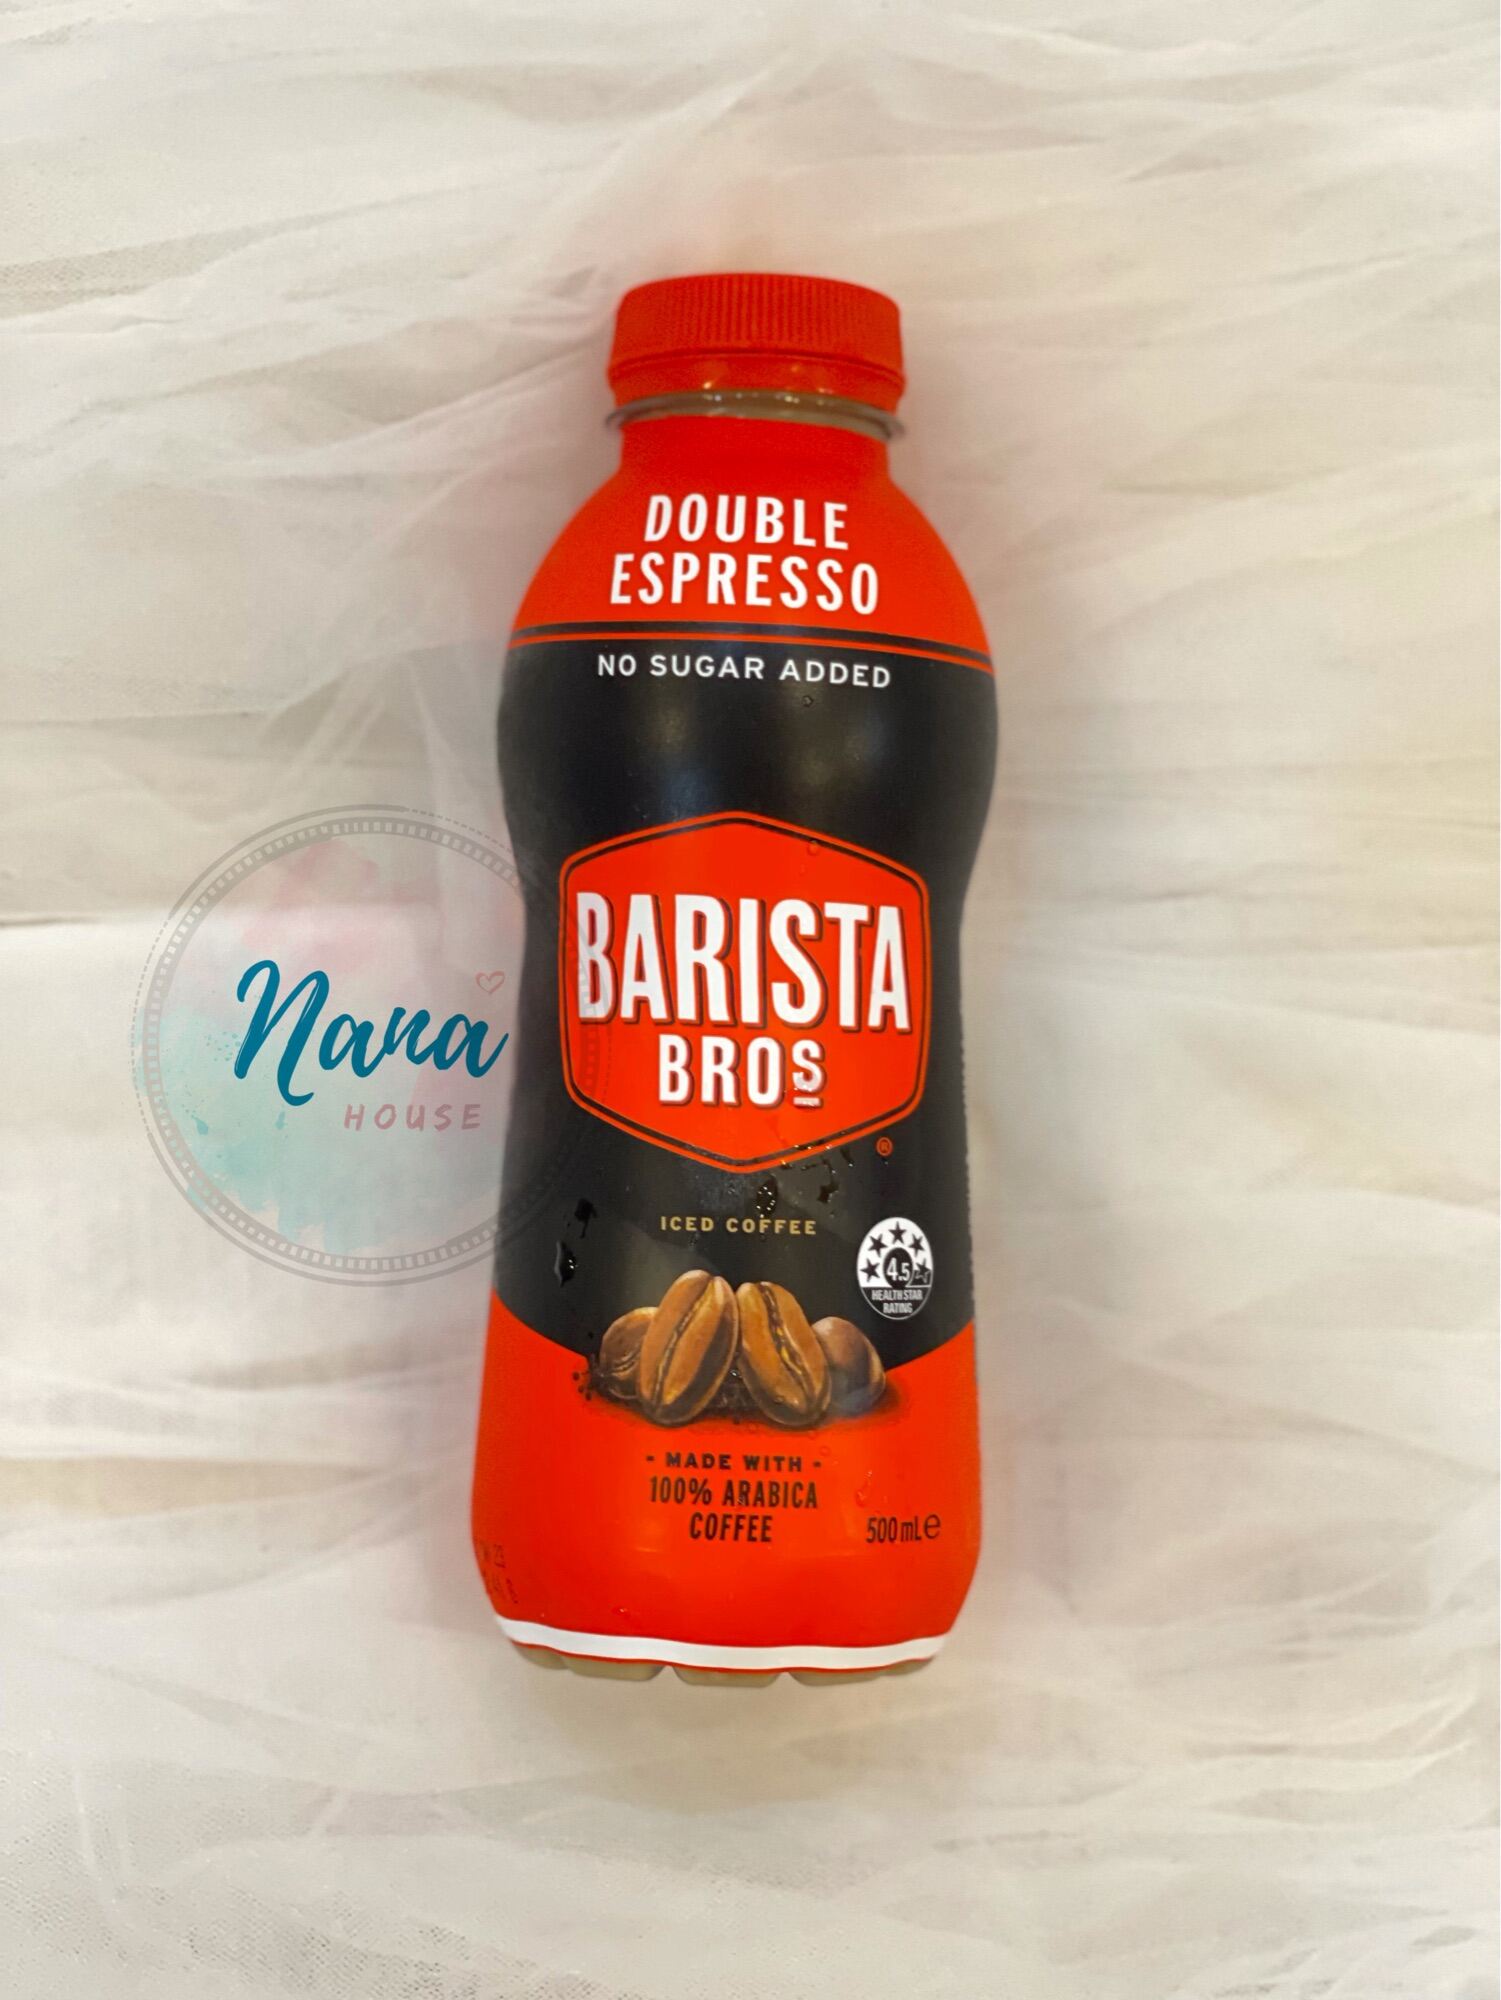 Barista Bros - Double Espresso